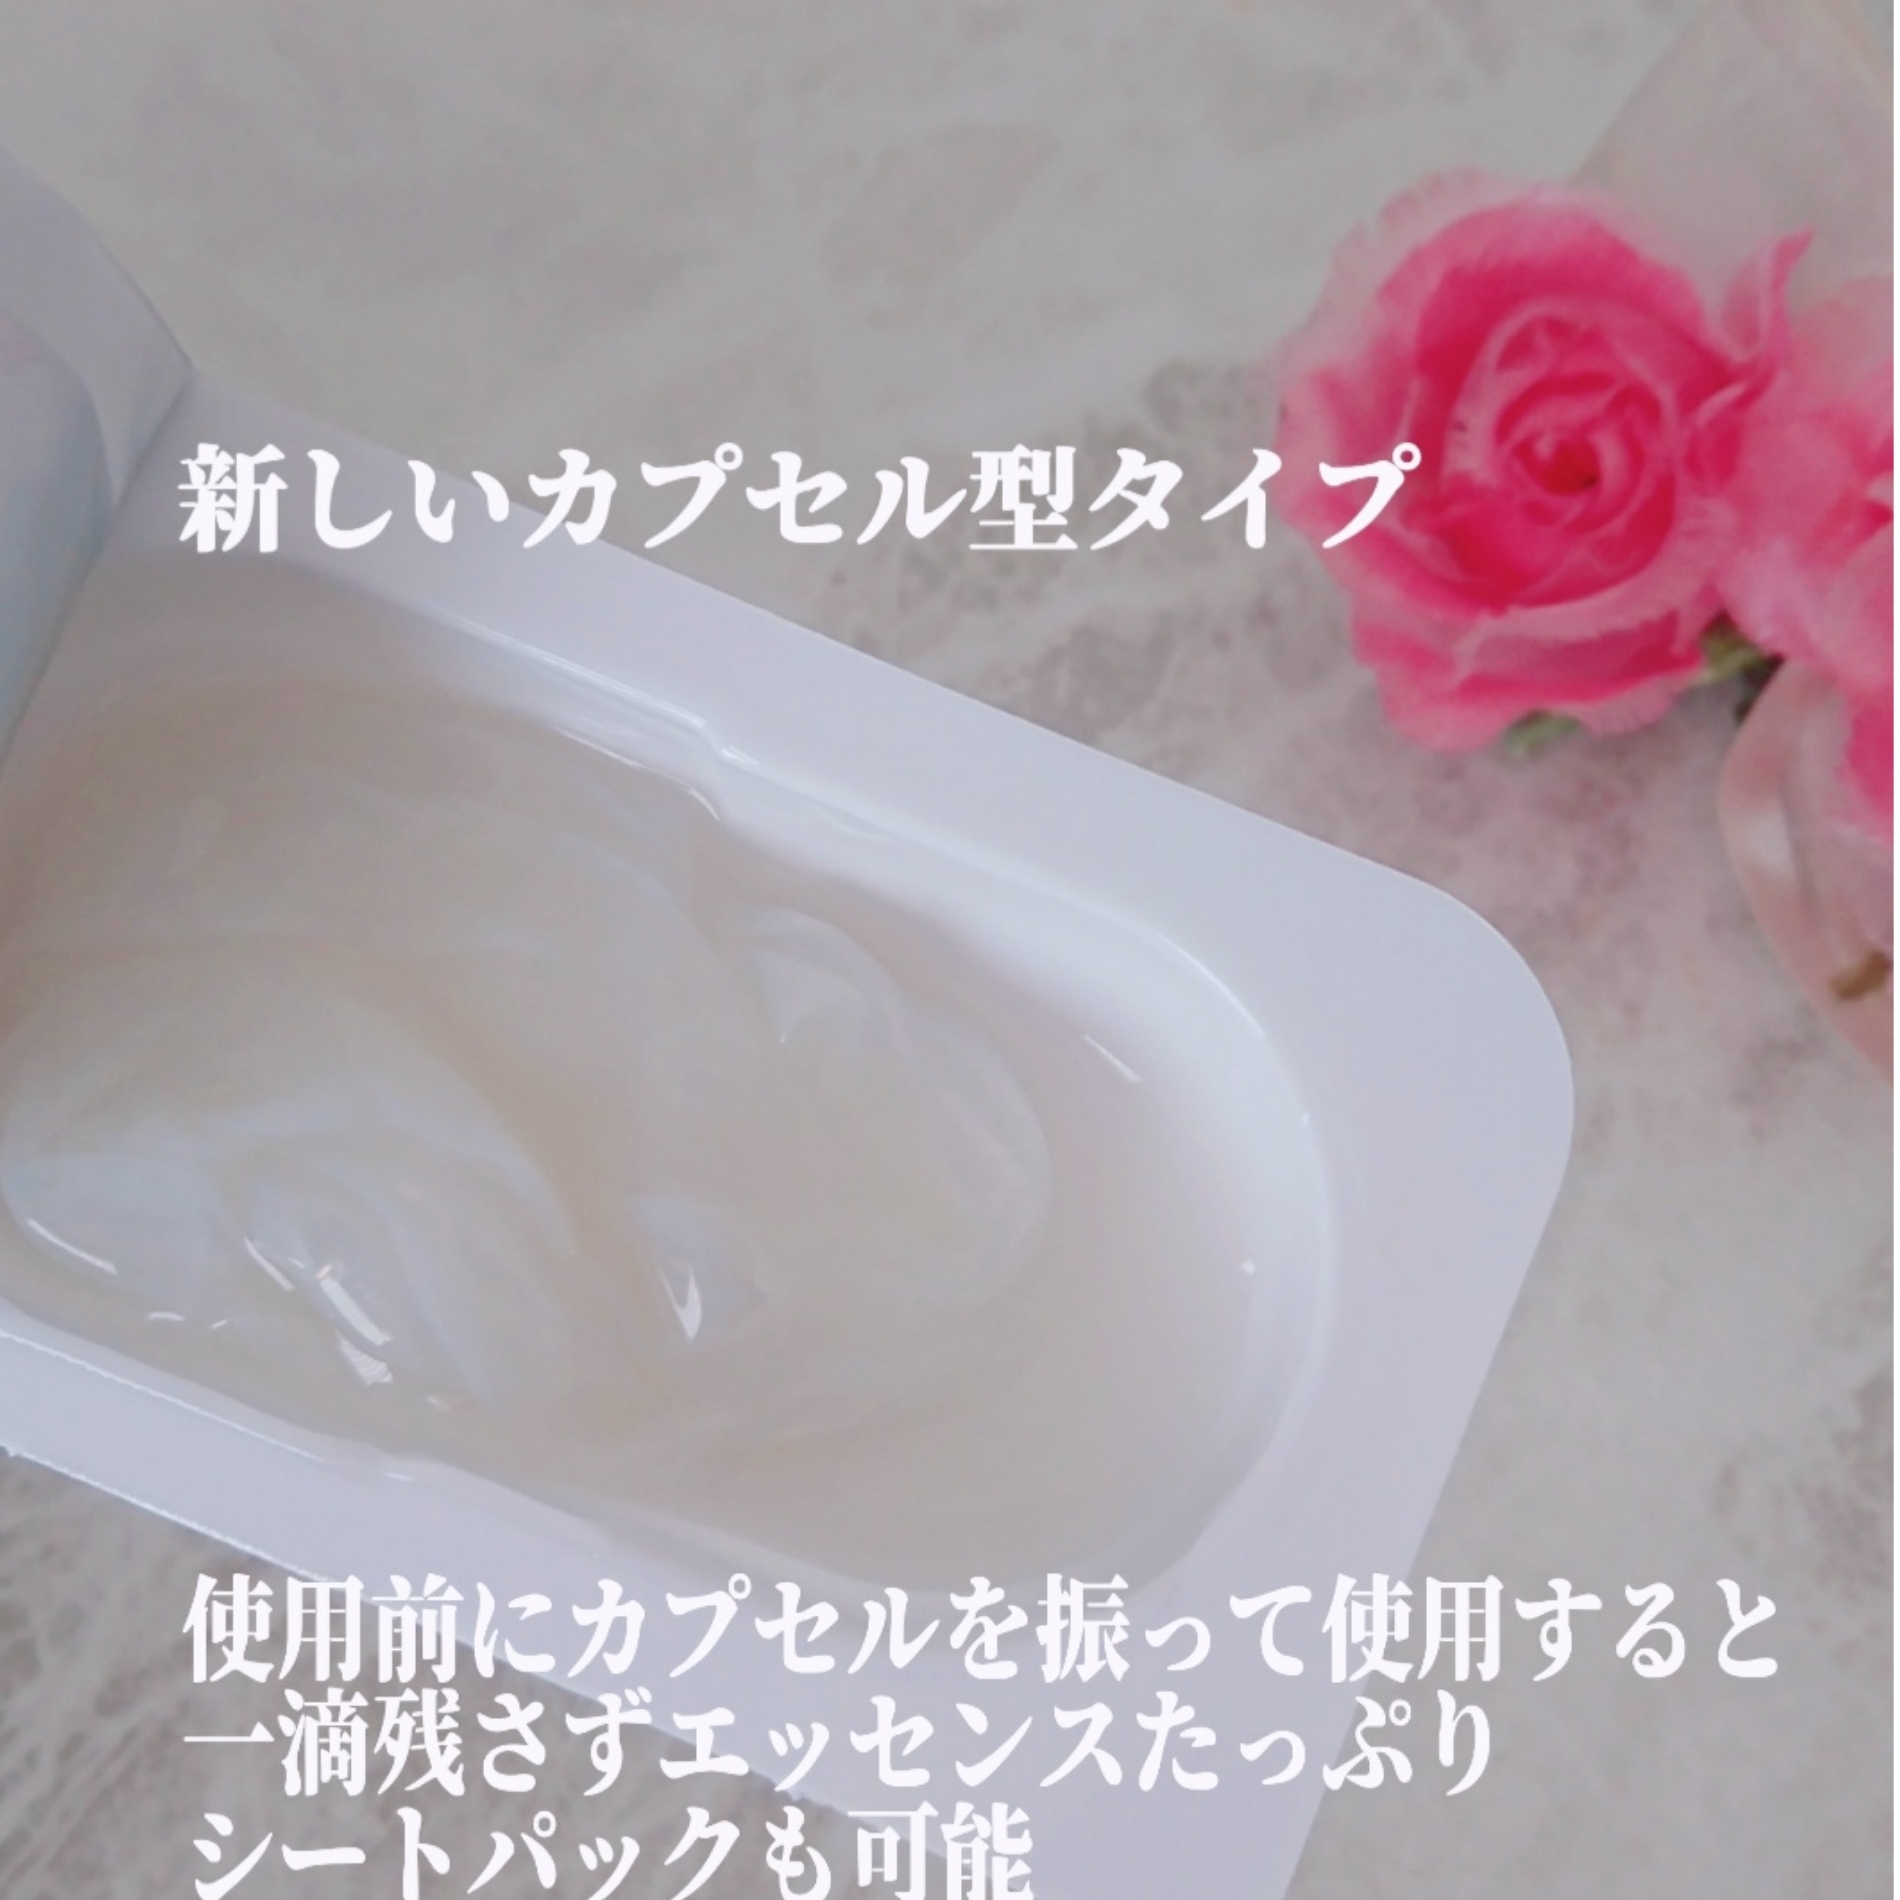 インデプスリジュブバイオセルロースマスクを使ったYuKaRi♡さんのクチコミ画像3